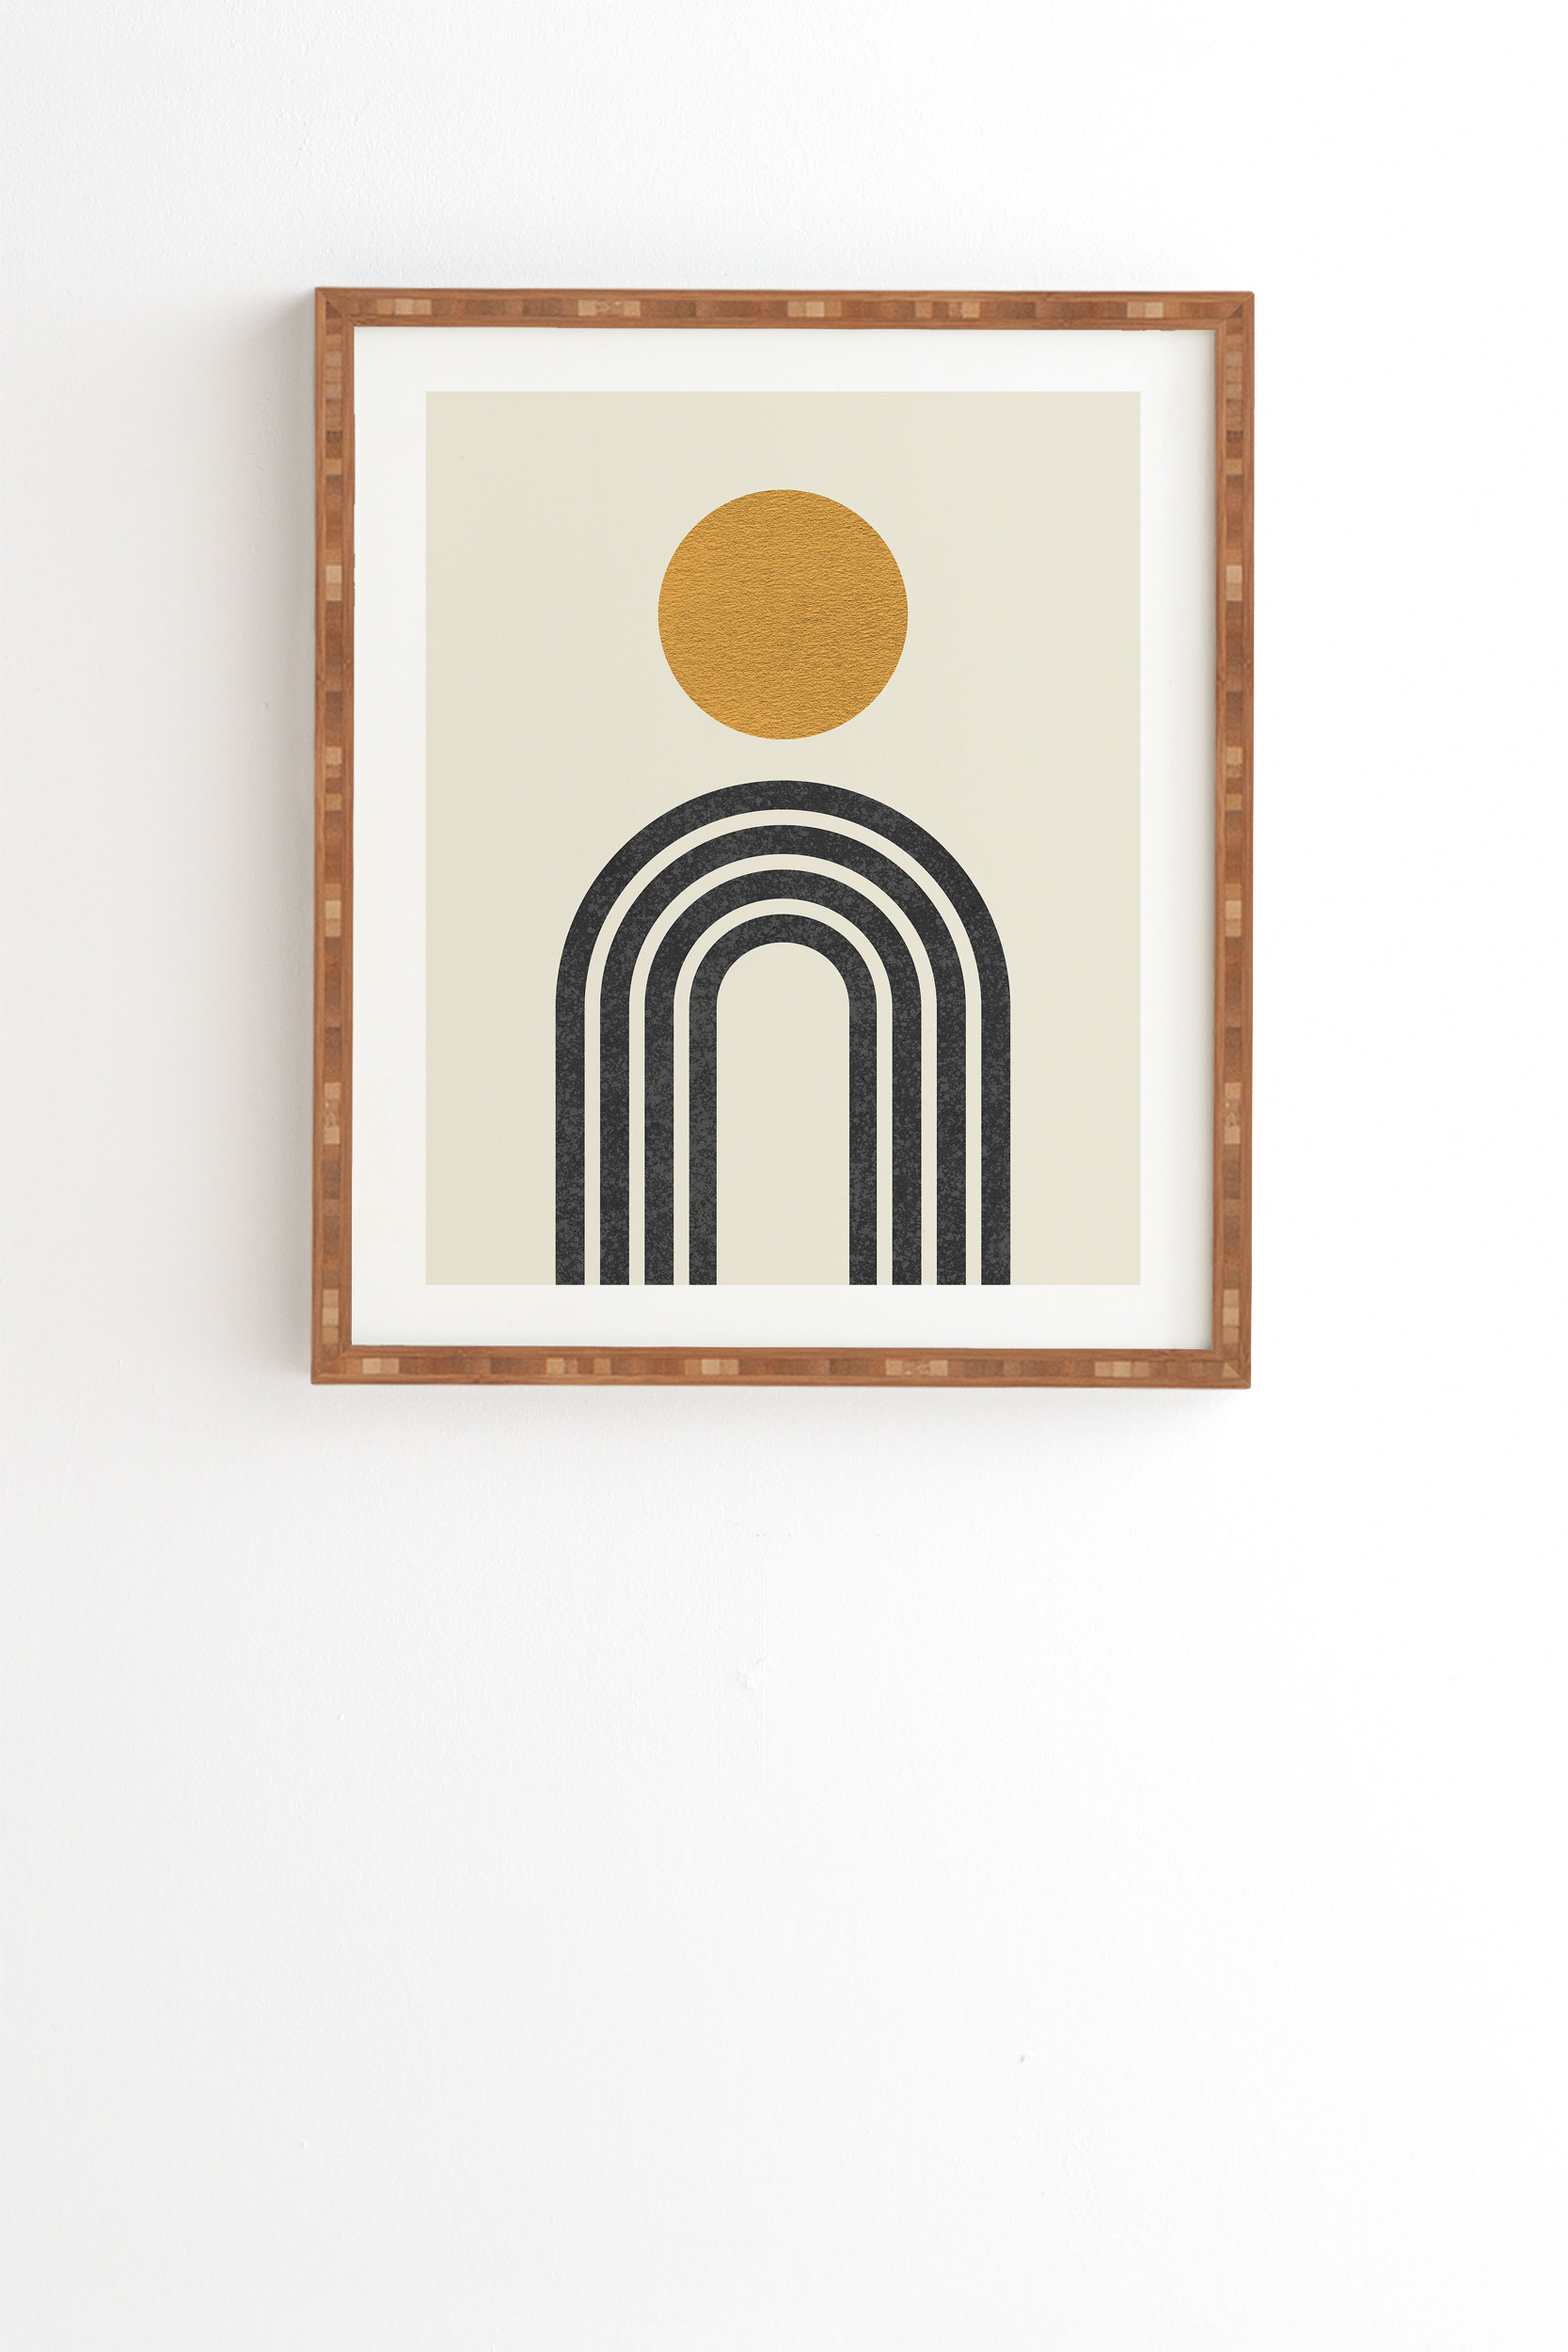 Mid Century Modern Gold Sun by MoonlightPrint - Framed Wall Art Bamboo 19" x 22.4" - Wander Print Co.